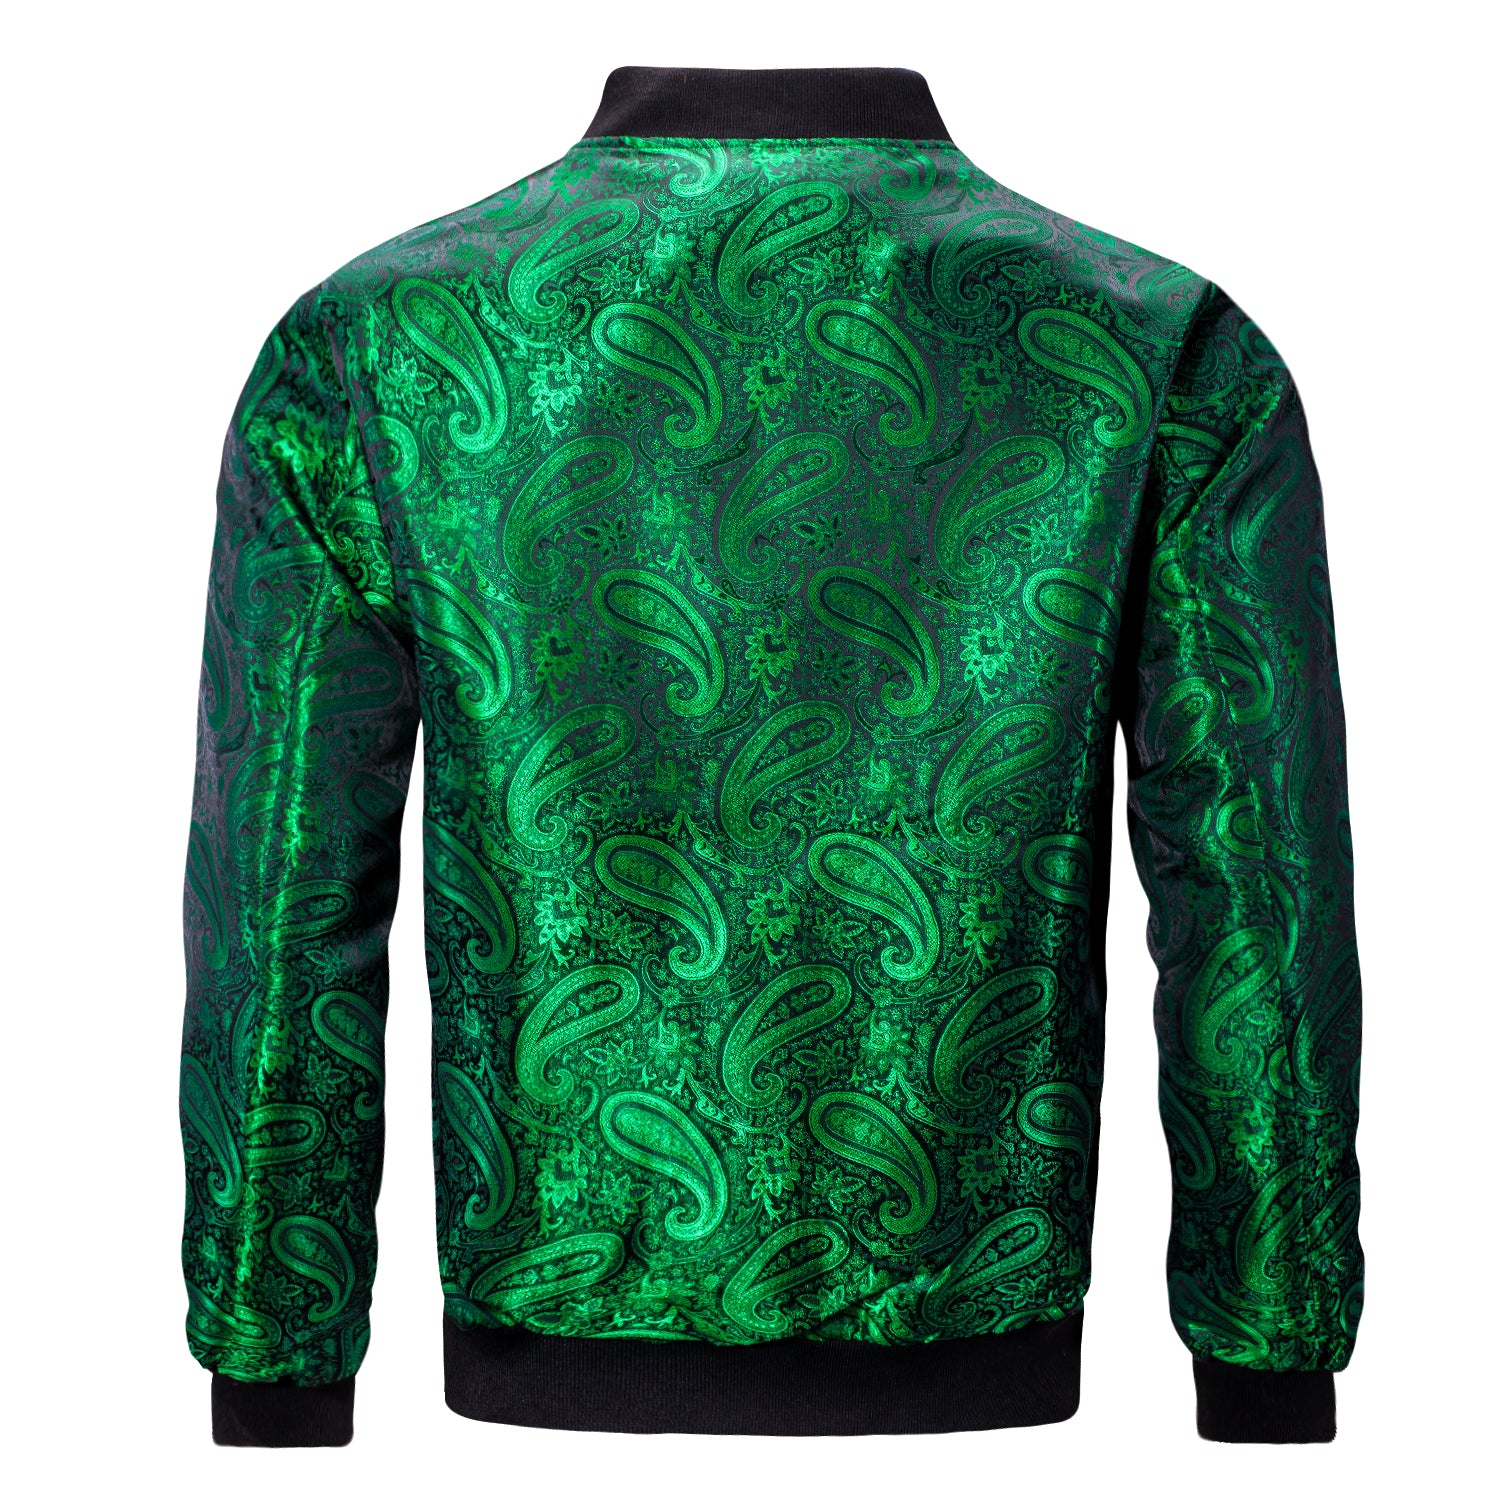 New Green Paisley Men's Urban Lightweight Zip Jacket Casual